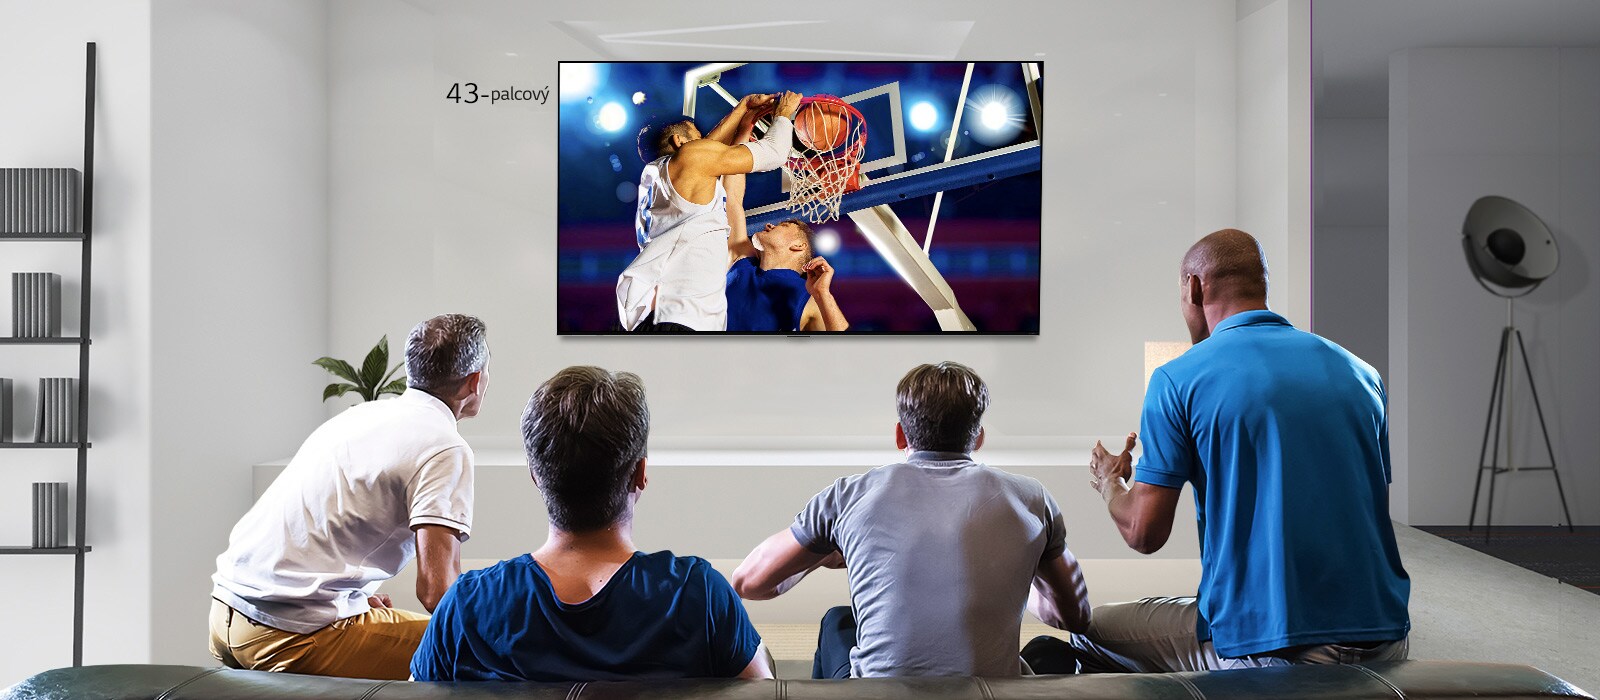 Pohľad zozadu na televízor osadený na stene. Zobrazuje štyroch mužov, ktorí sledujú basketbalový zápas. Posunutím zľava doprava sa zobrazí rozdiel medzi veľkosťou 43-palcovej a 86-palcovej obrazovky.